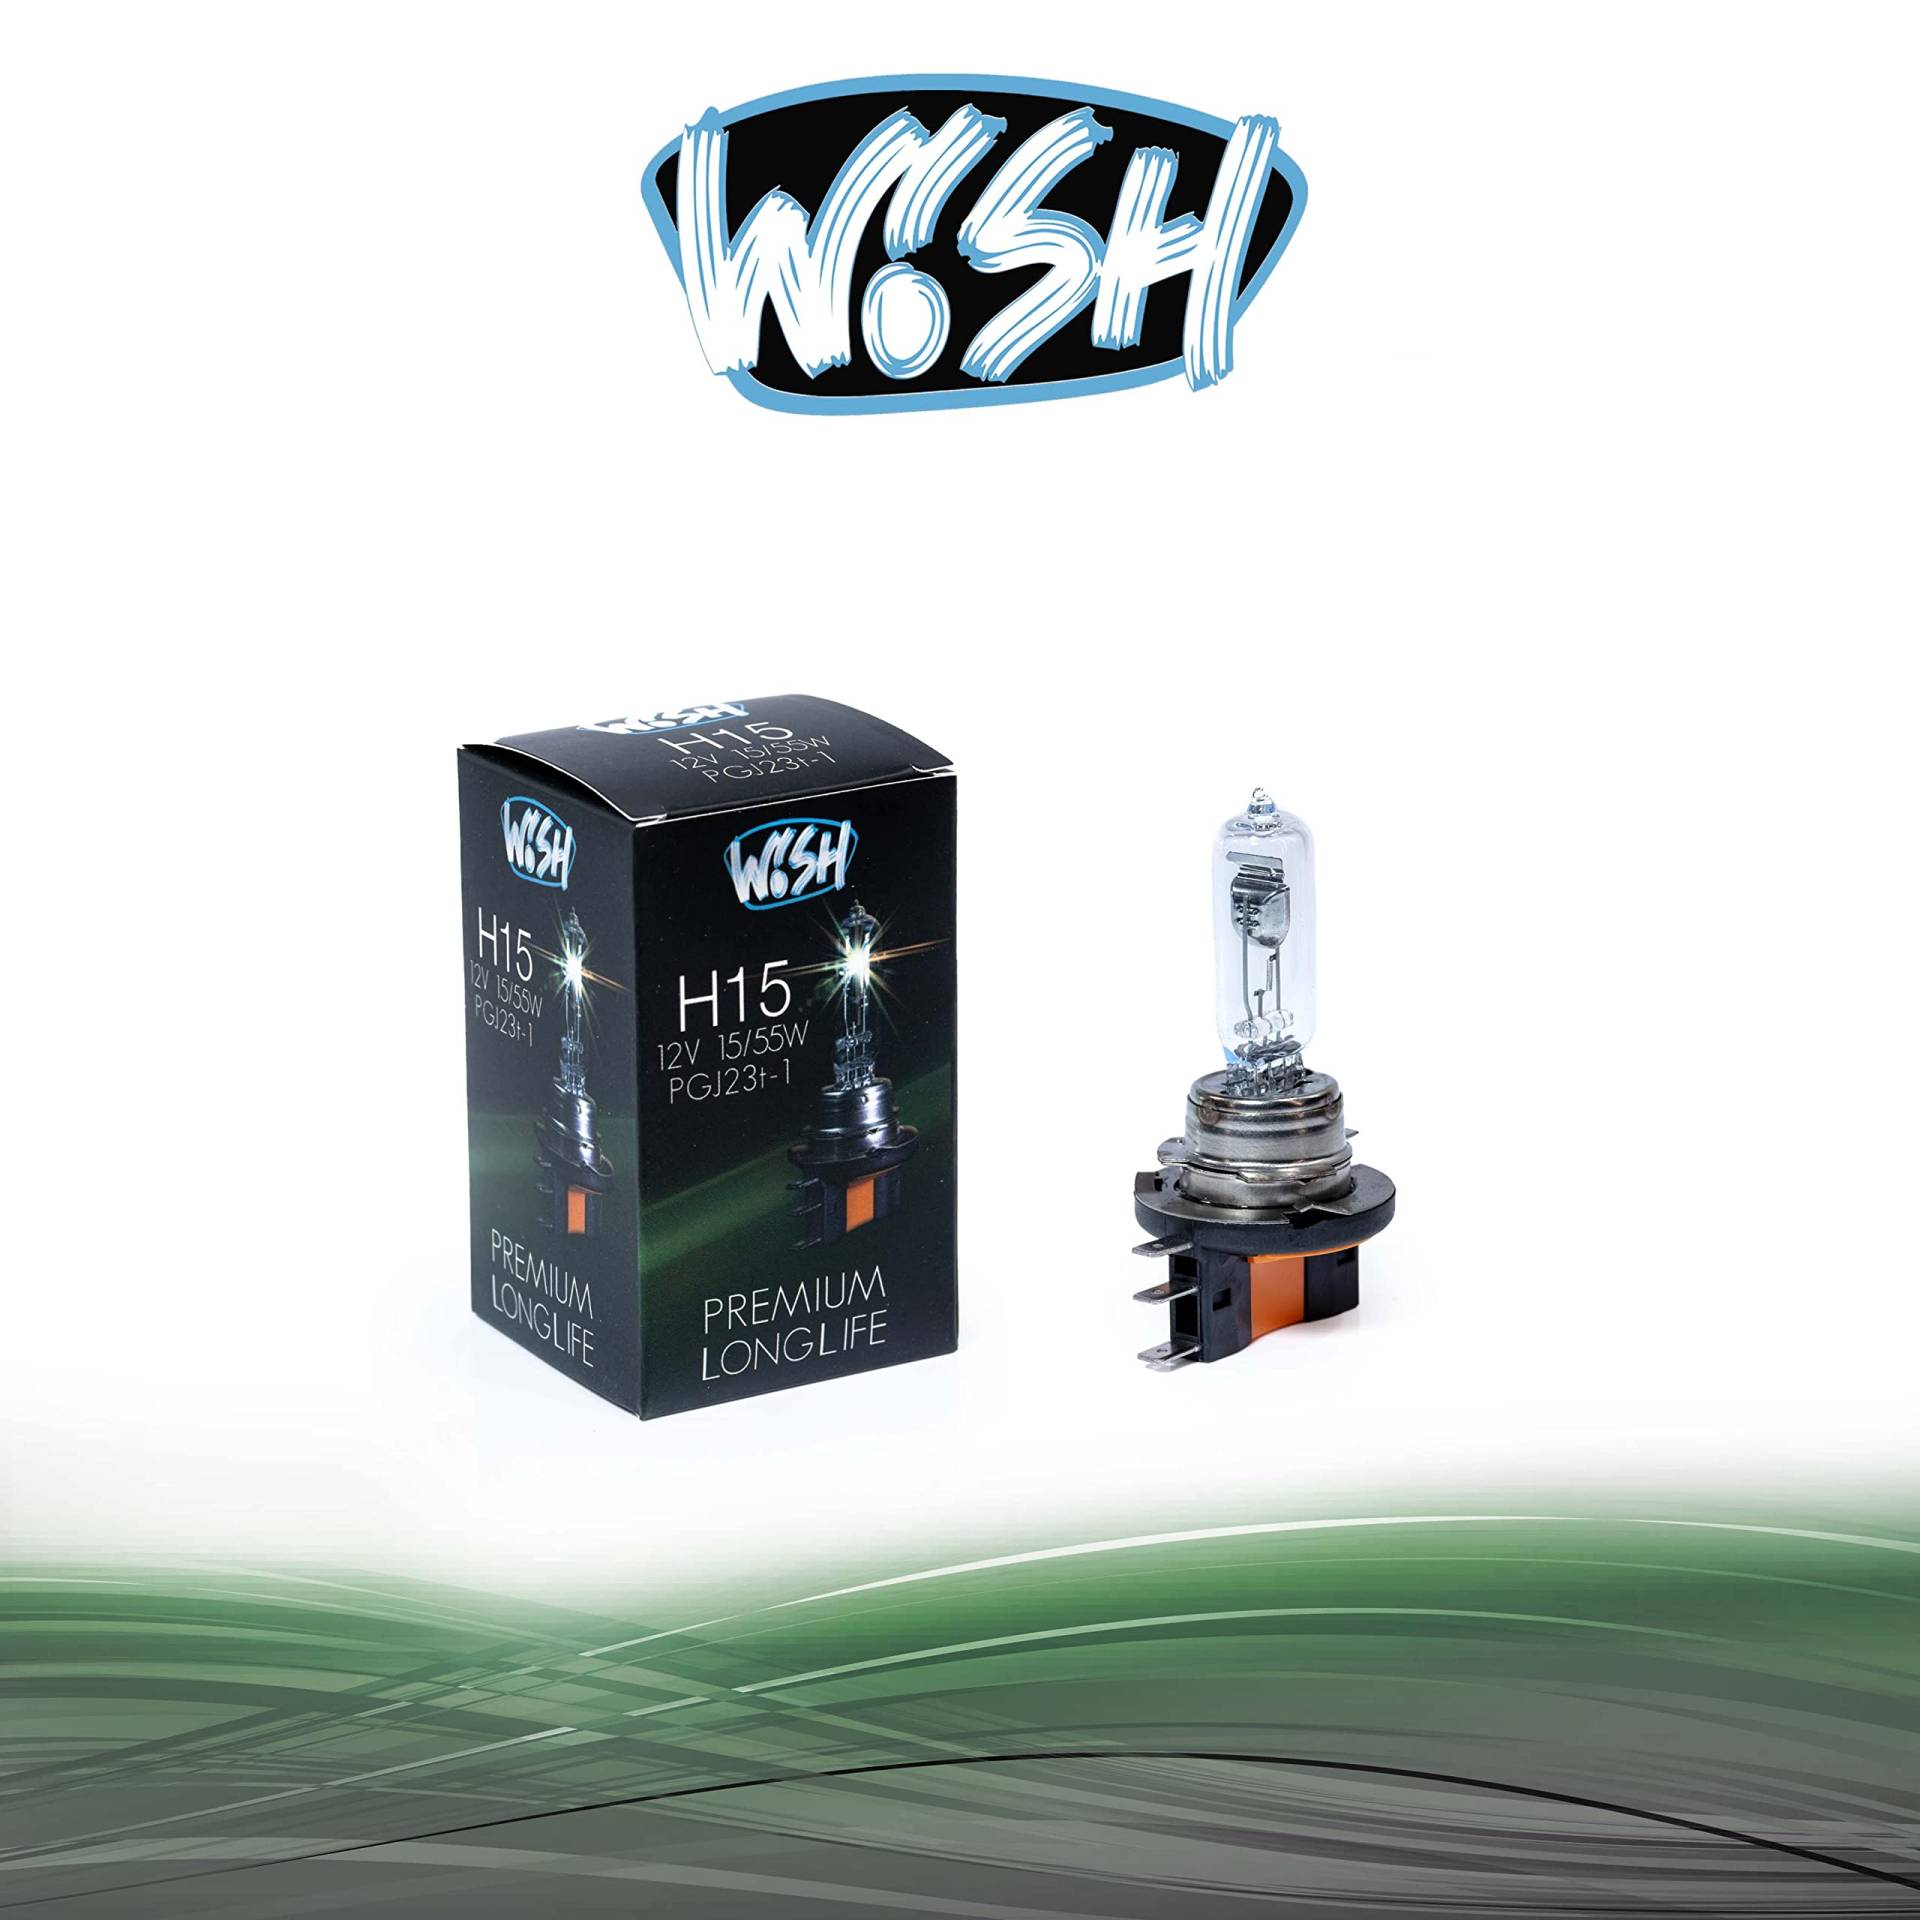 Wish® H15 LongLife 12V 15/55W PGJ23t-1 Halogen Glühbirne Lampe Scheinwerferlampe (H15 LongLife Einzelpack) von Wish